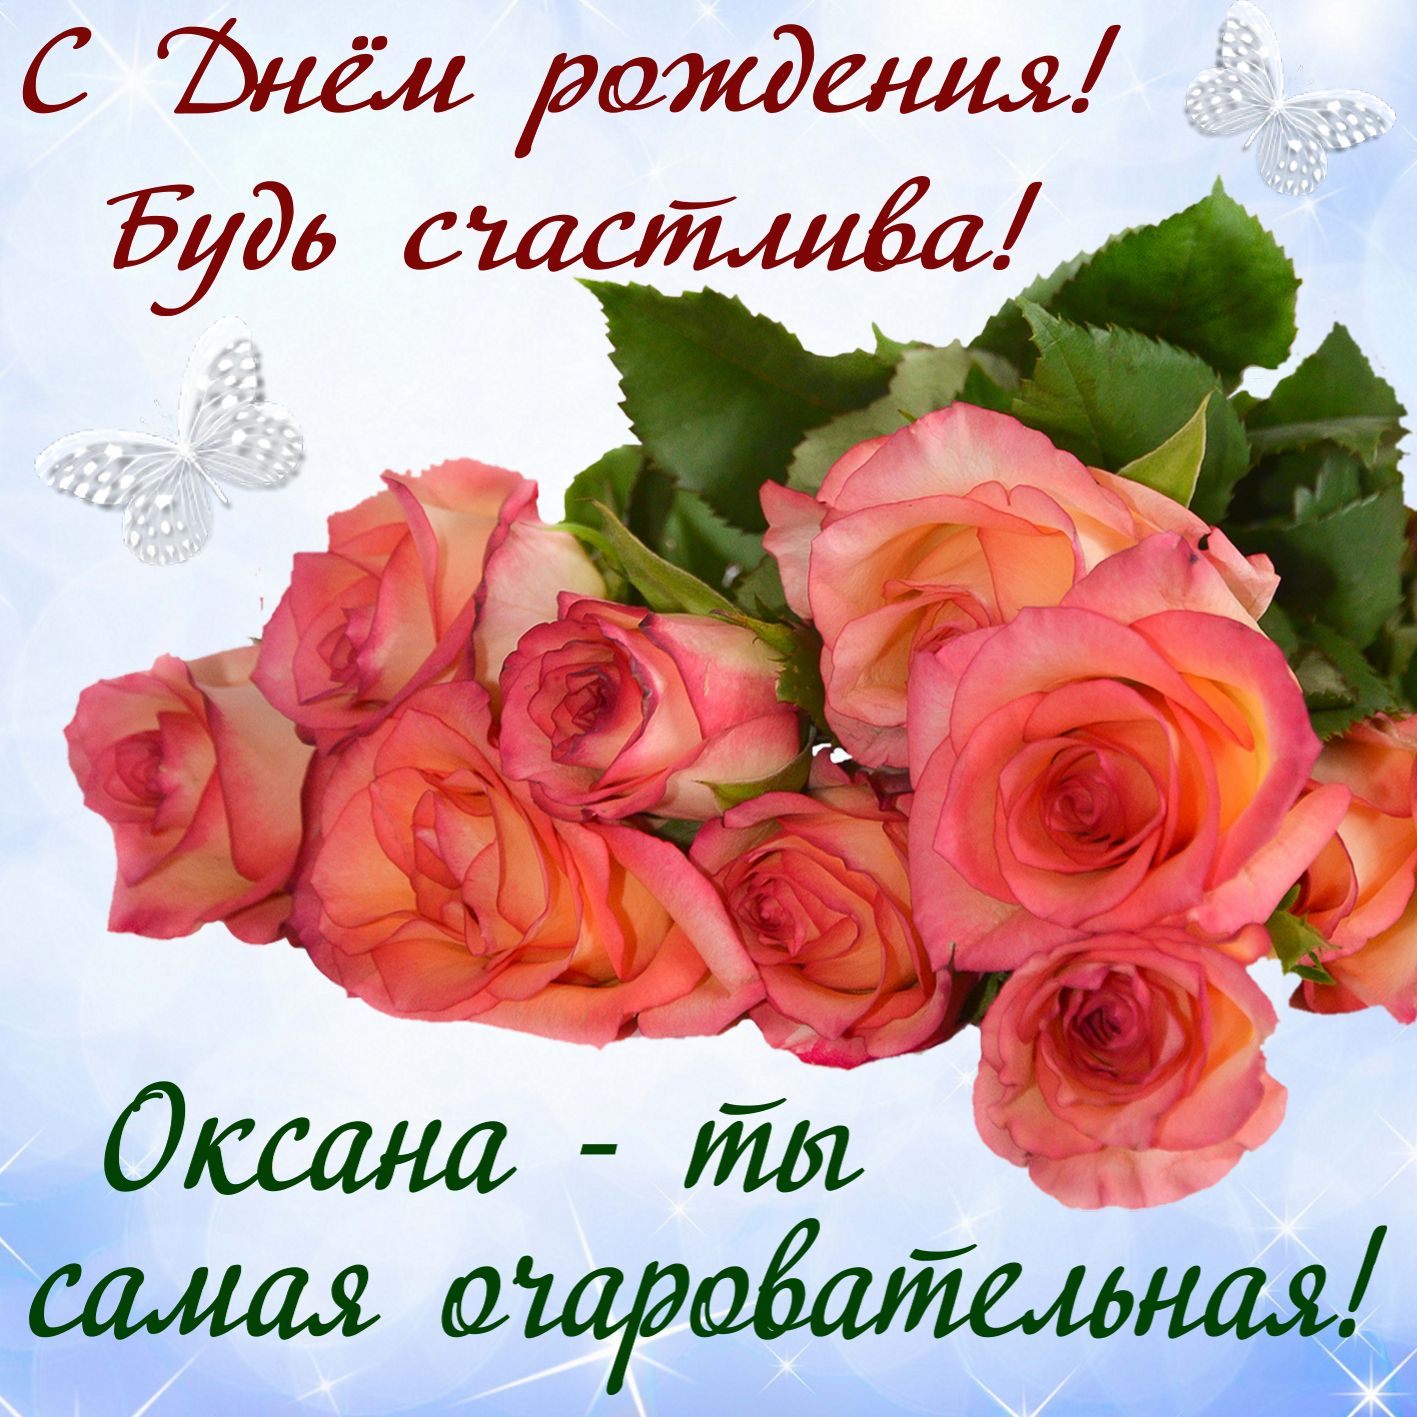 С днем рождения, Оксана Игликова! - b2bis.kz